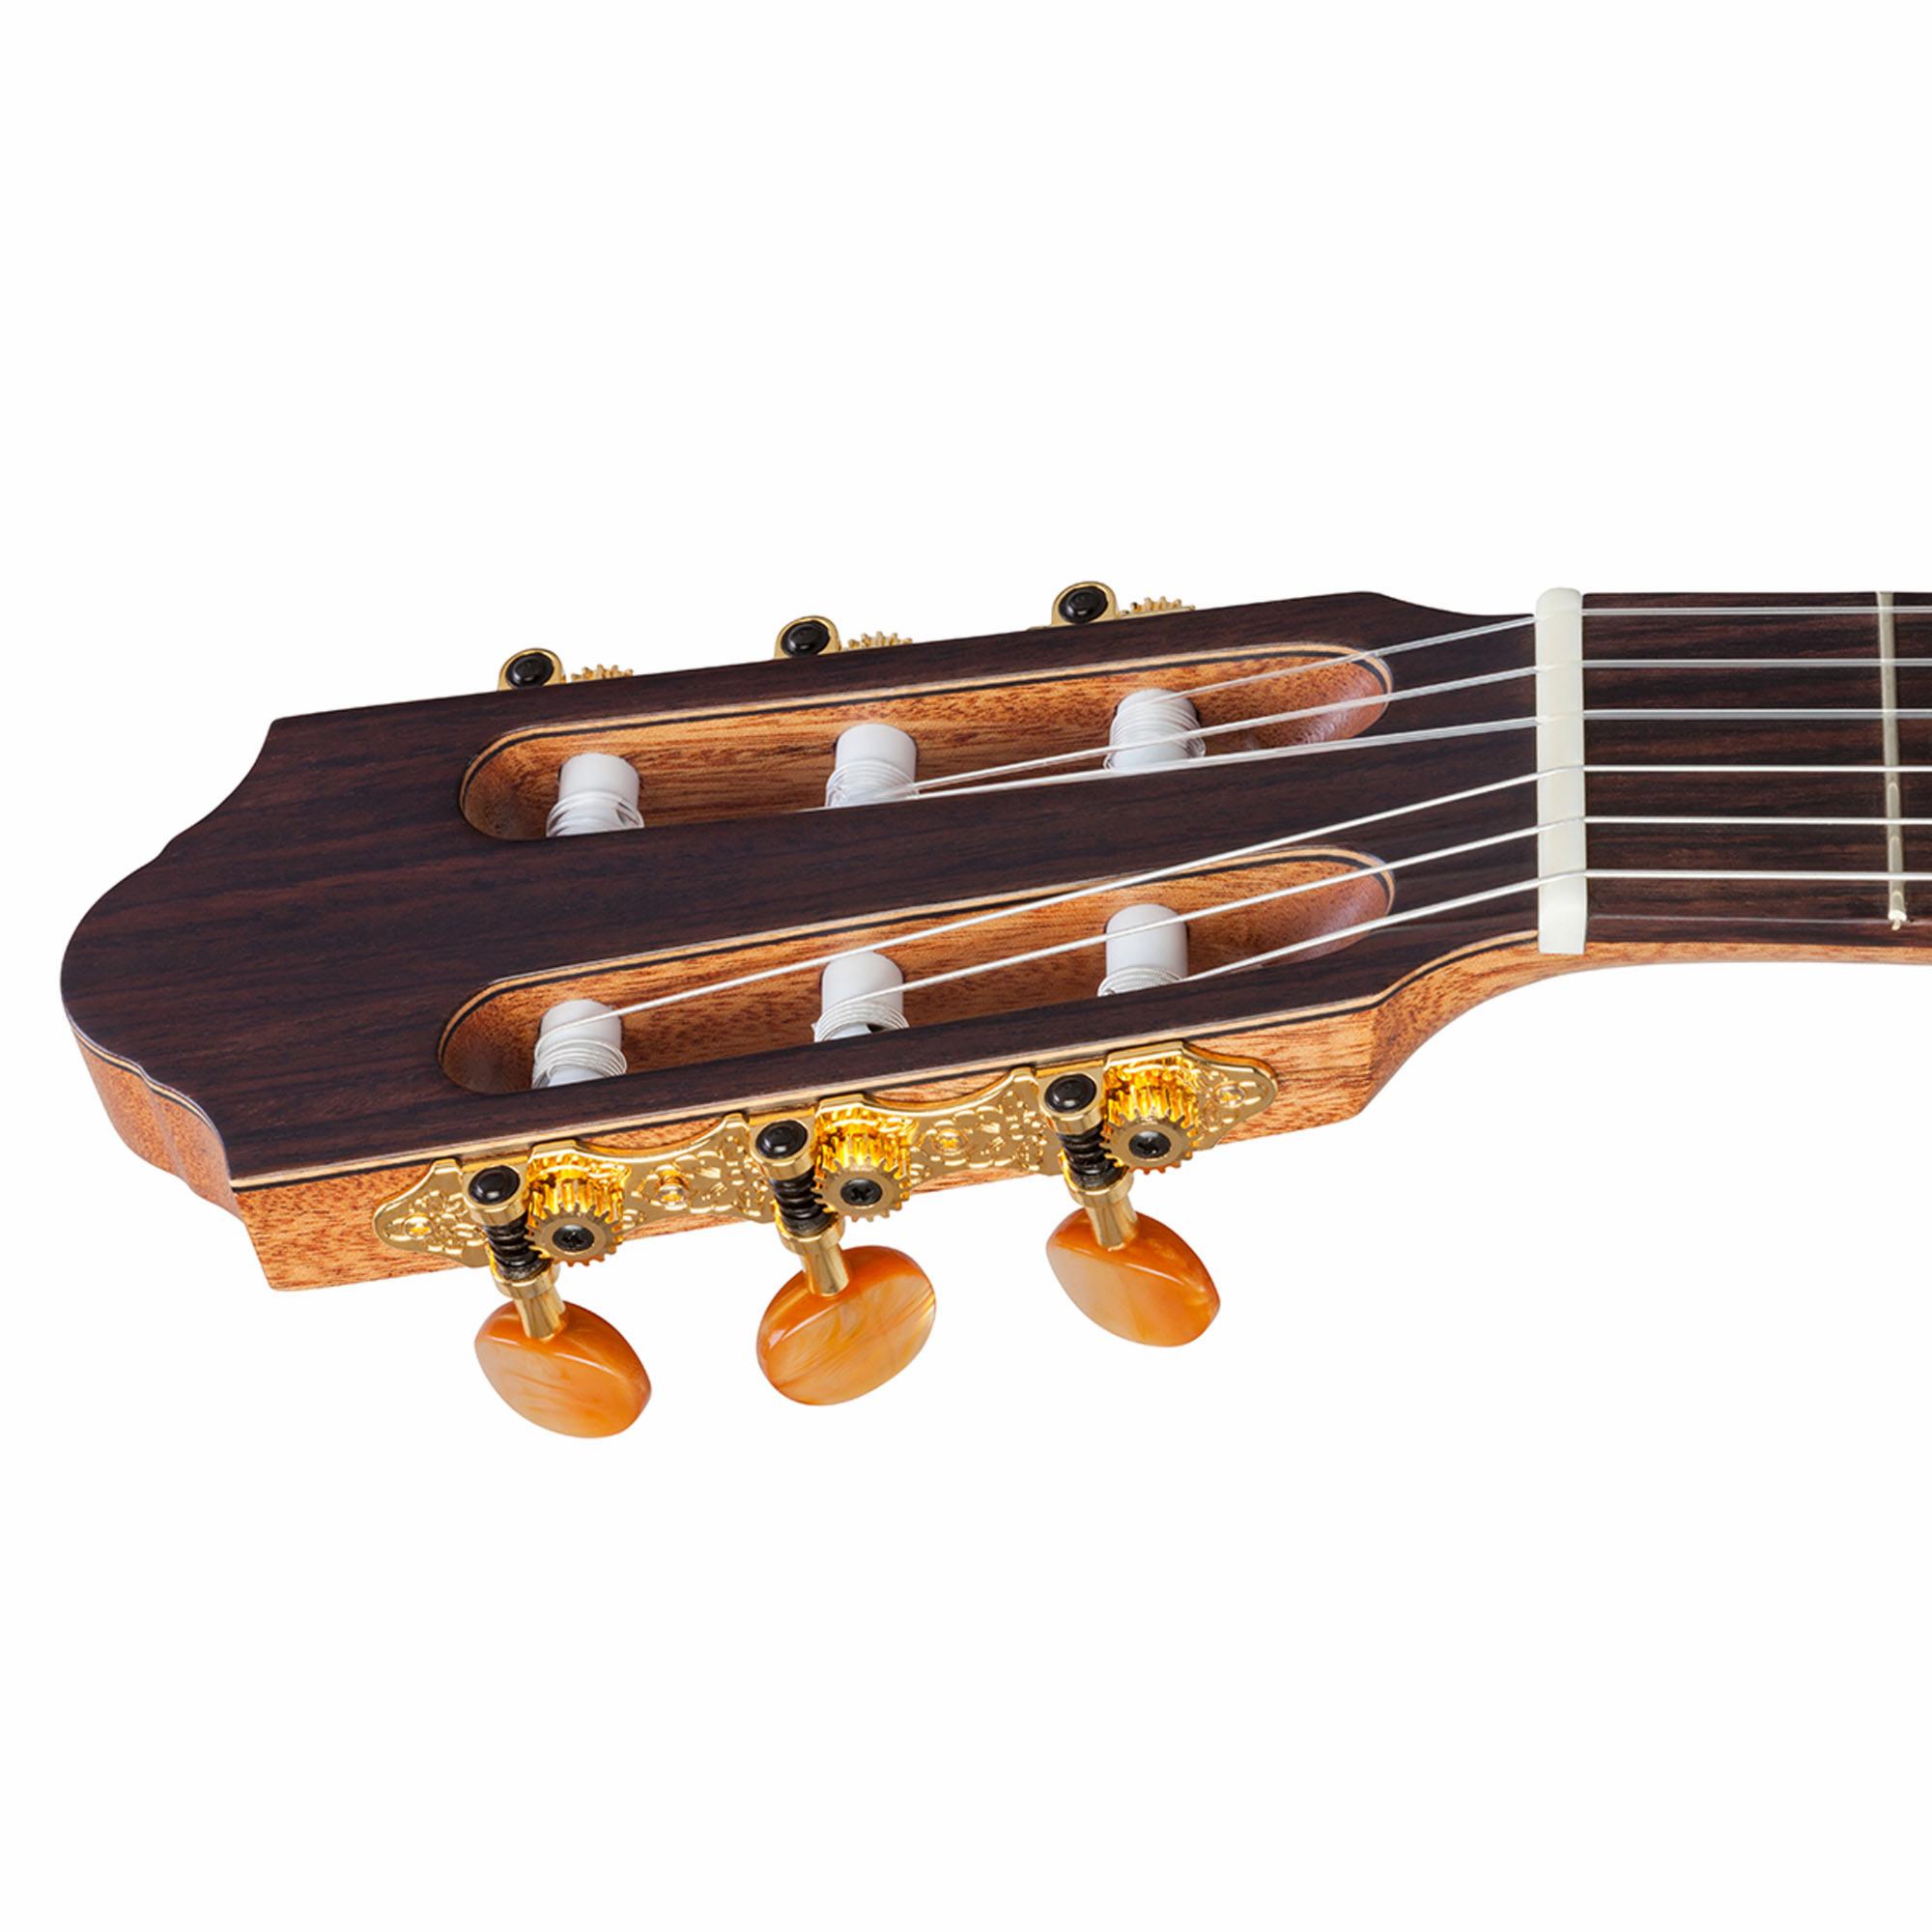 Kremona Sofia Guitar